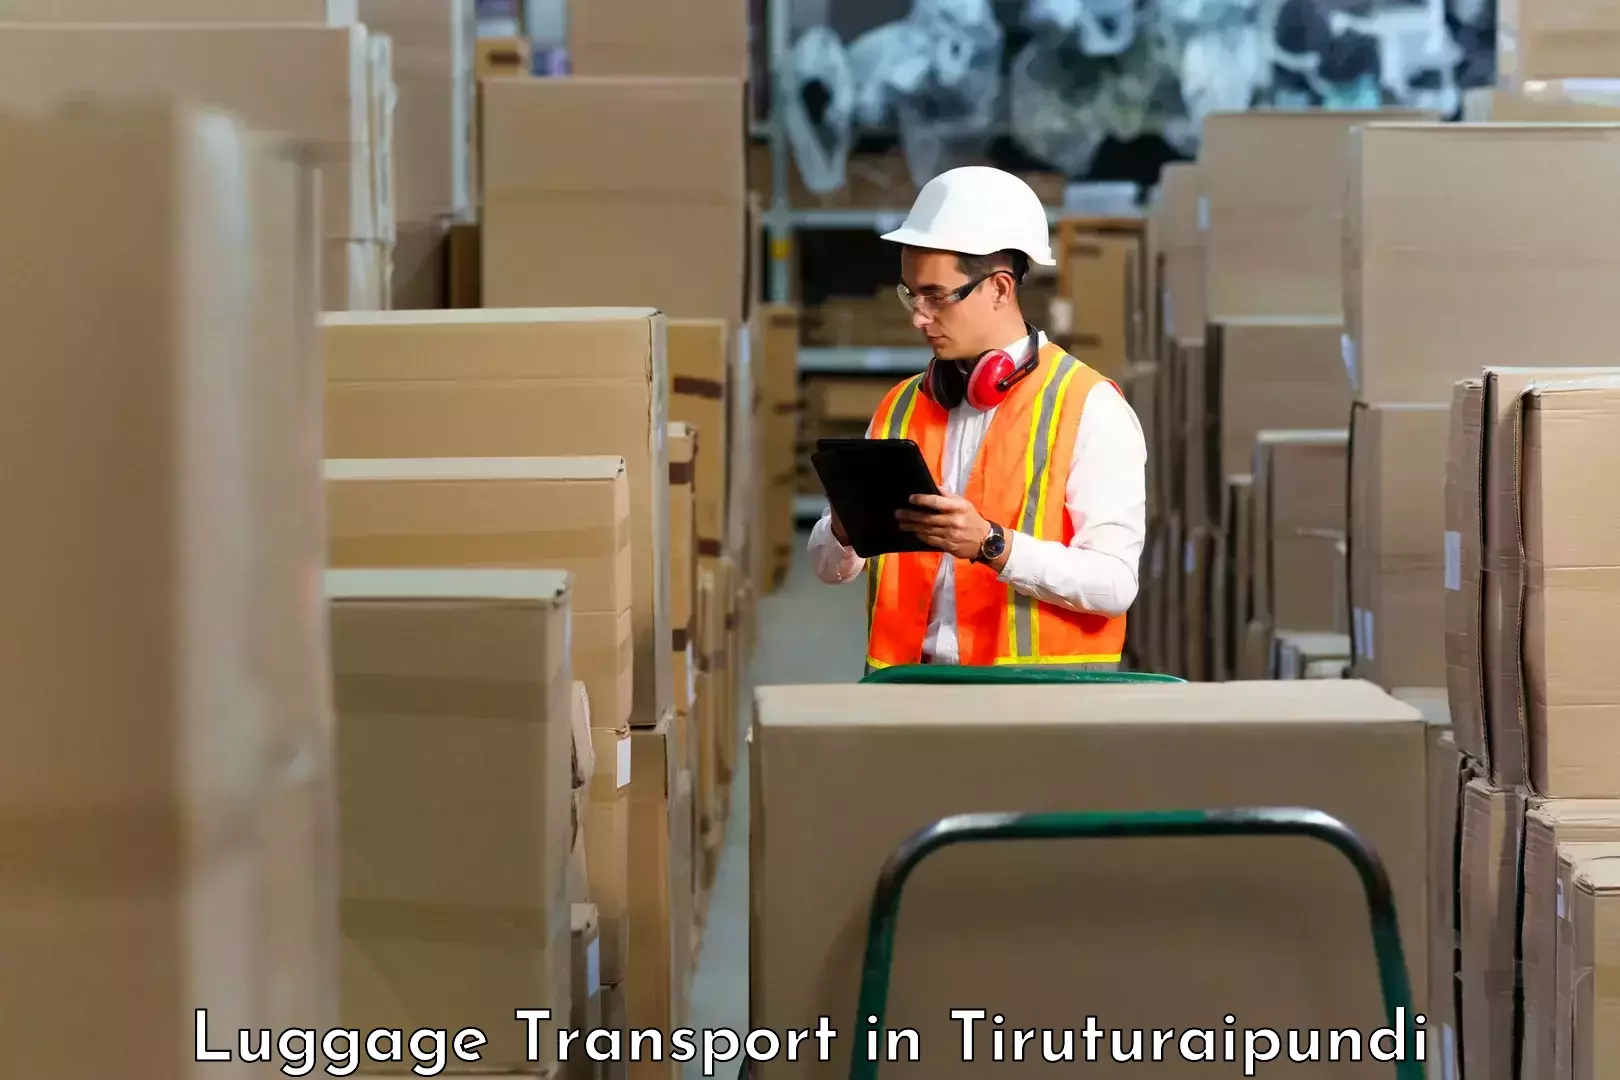 Luggage transport operations in Tiruturaipundi